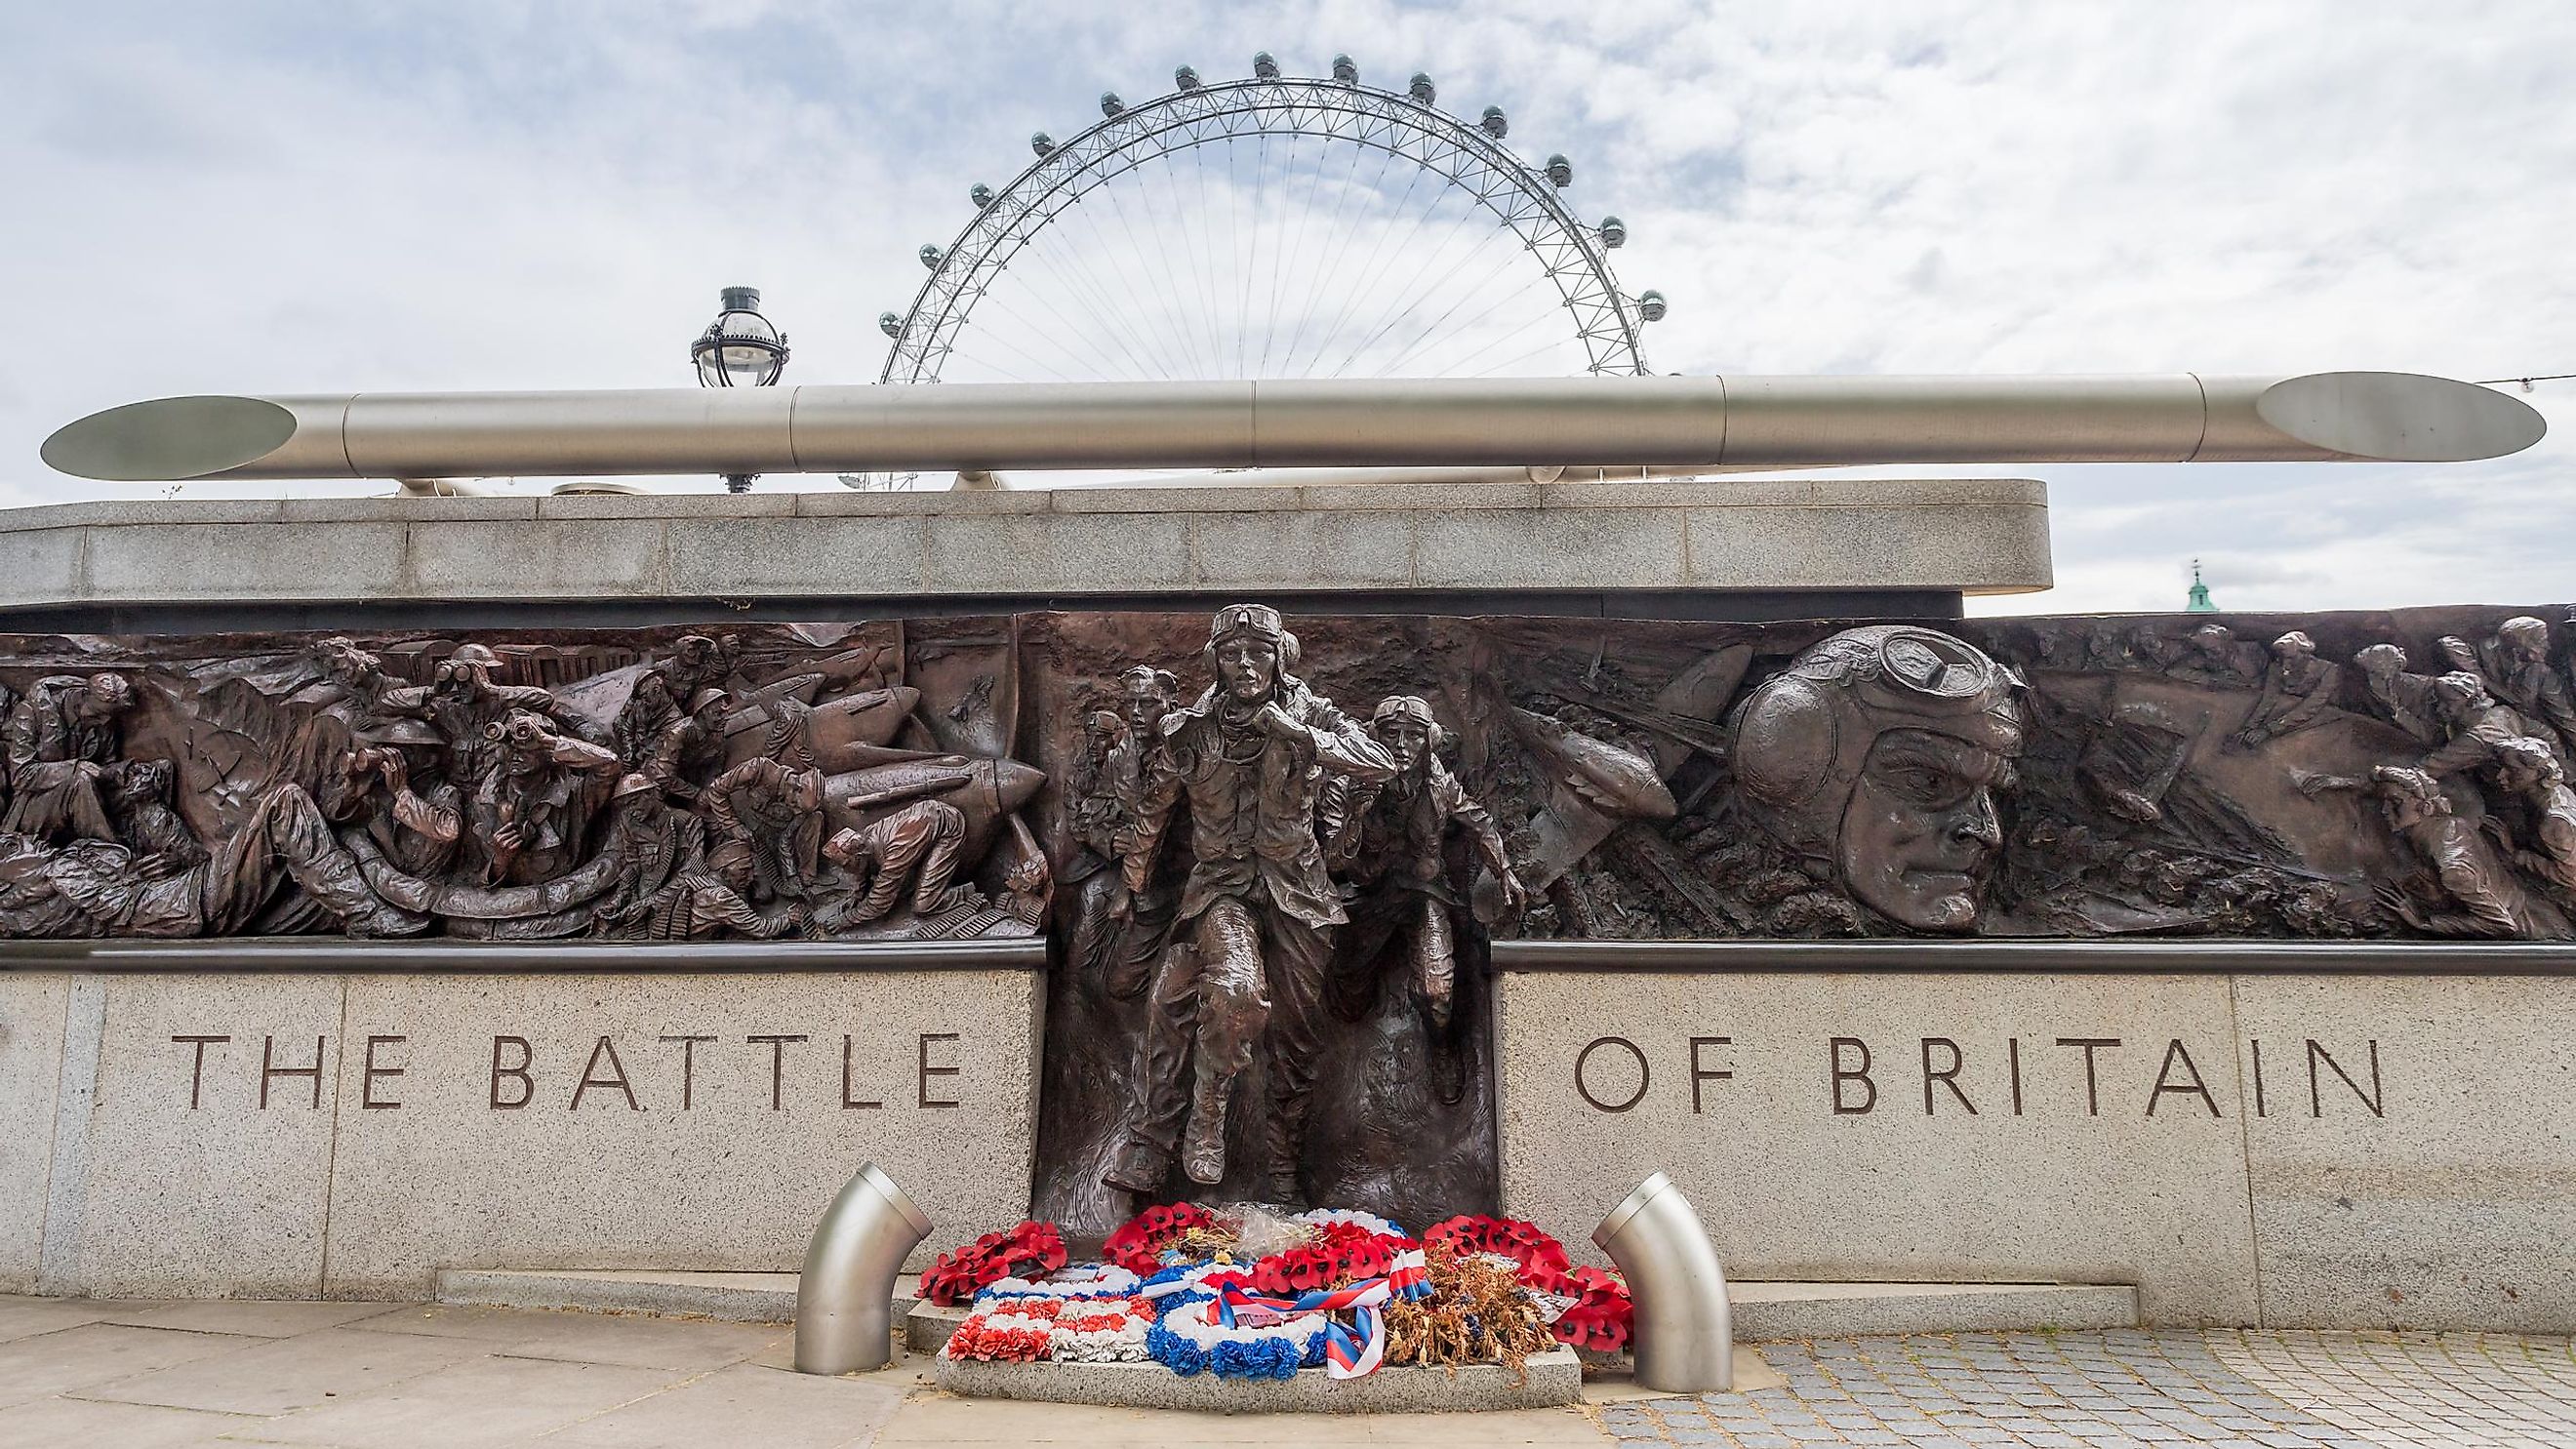 The Battle of Britain Memorial in London.